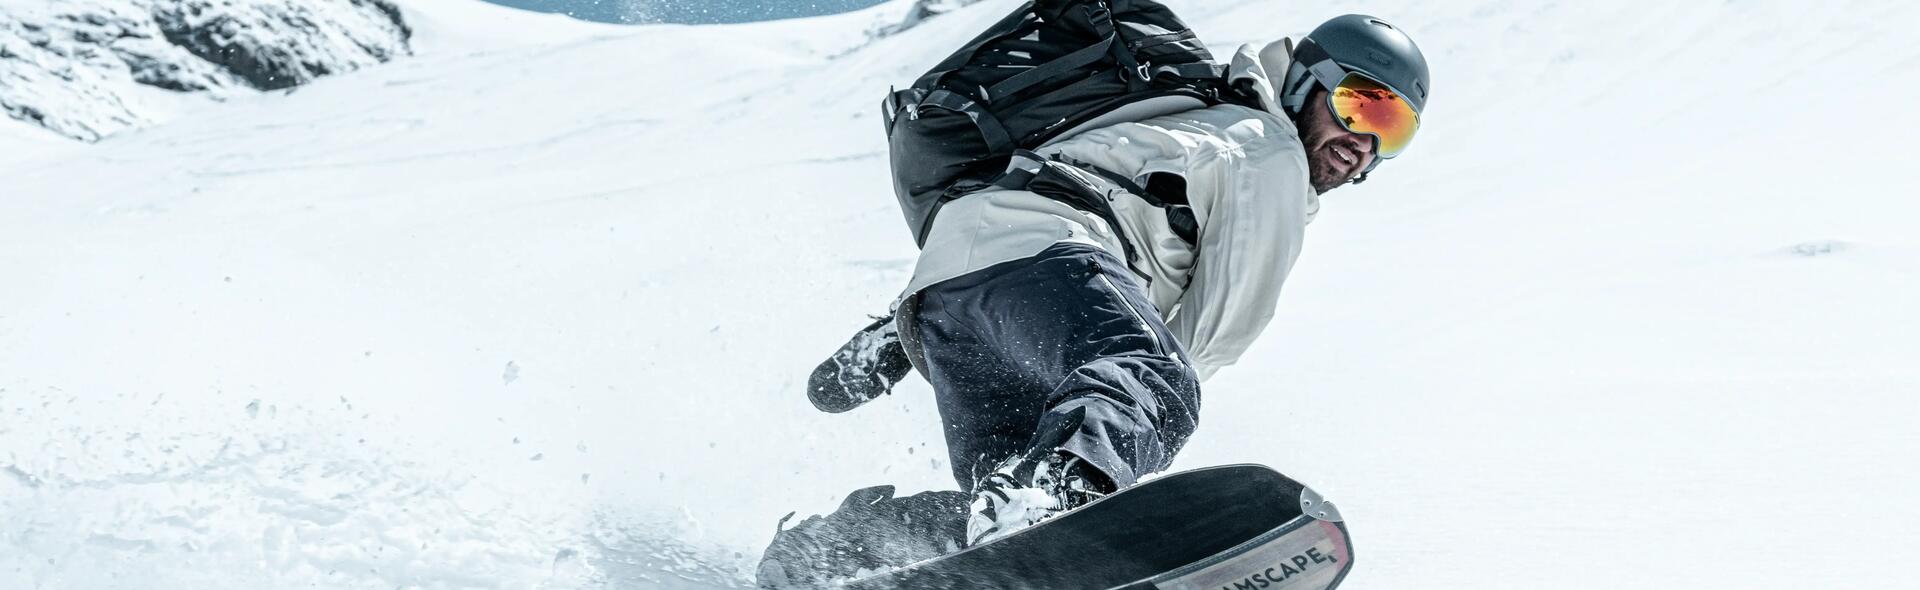 snowboard – servis